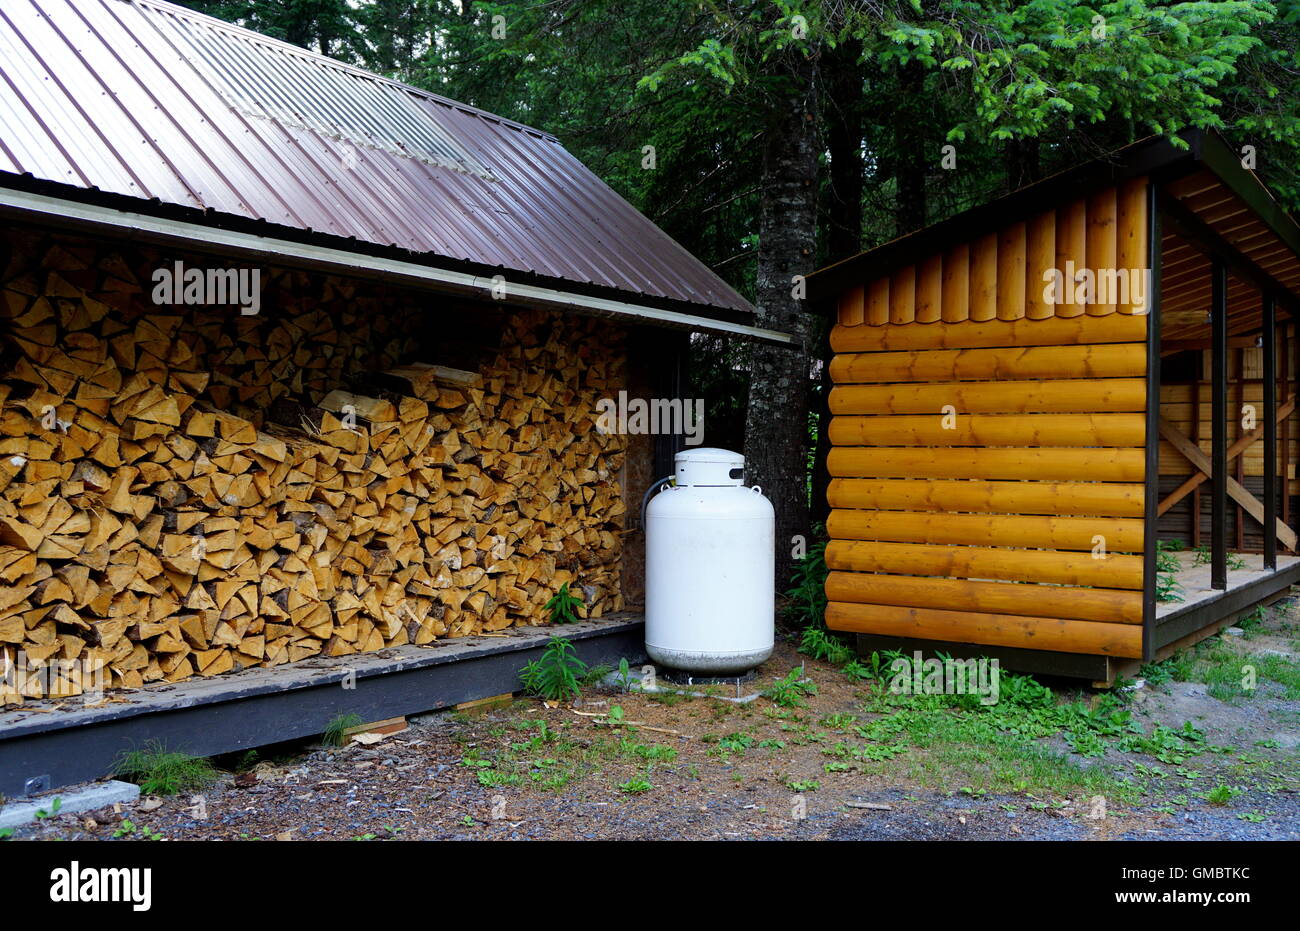 Deux sources de combustibles, renouvelables et non renouvelables (bois haché contre gaz) exposées au Stoney Creek Inn, Seward, Alaska Banque D'Images